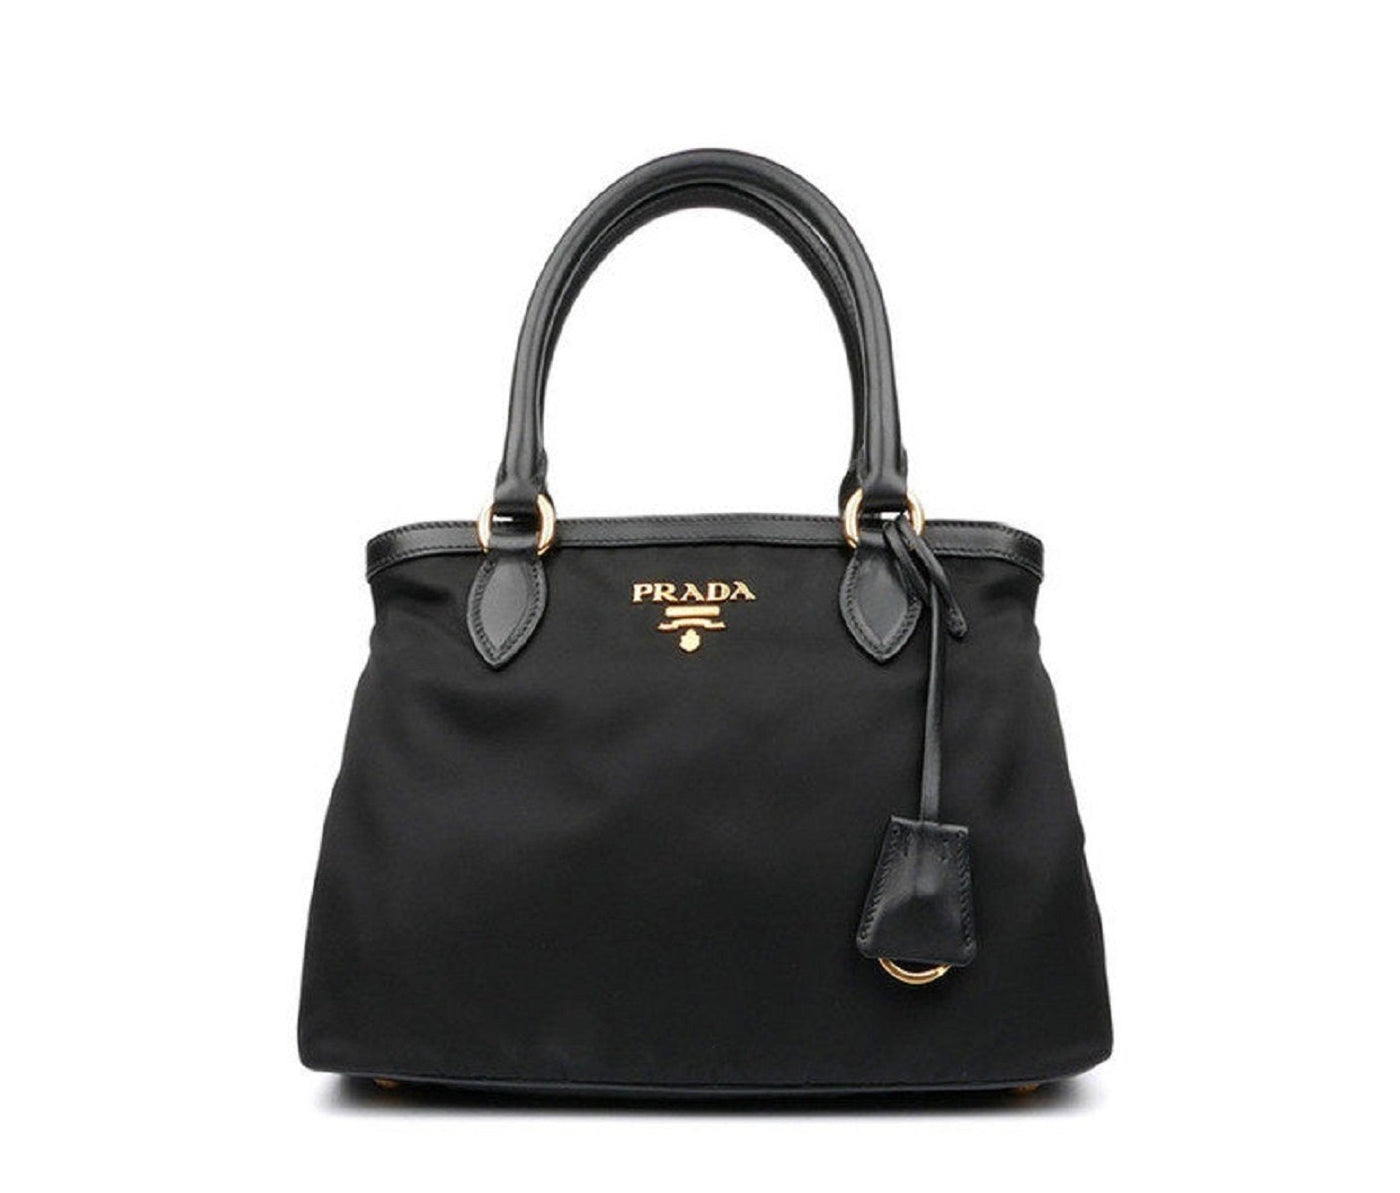 Prada Tessuto Nylon Black Saffiano Medium Handbag Satchel - LUXURYMRKT